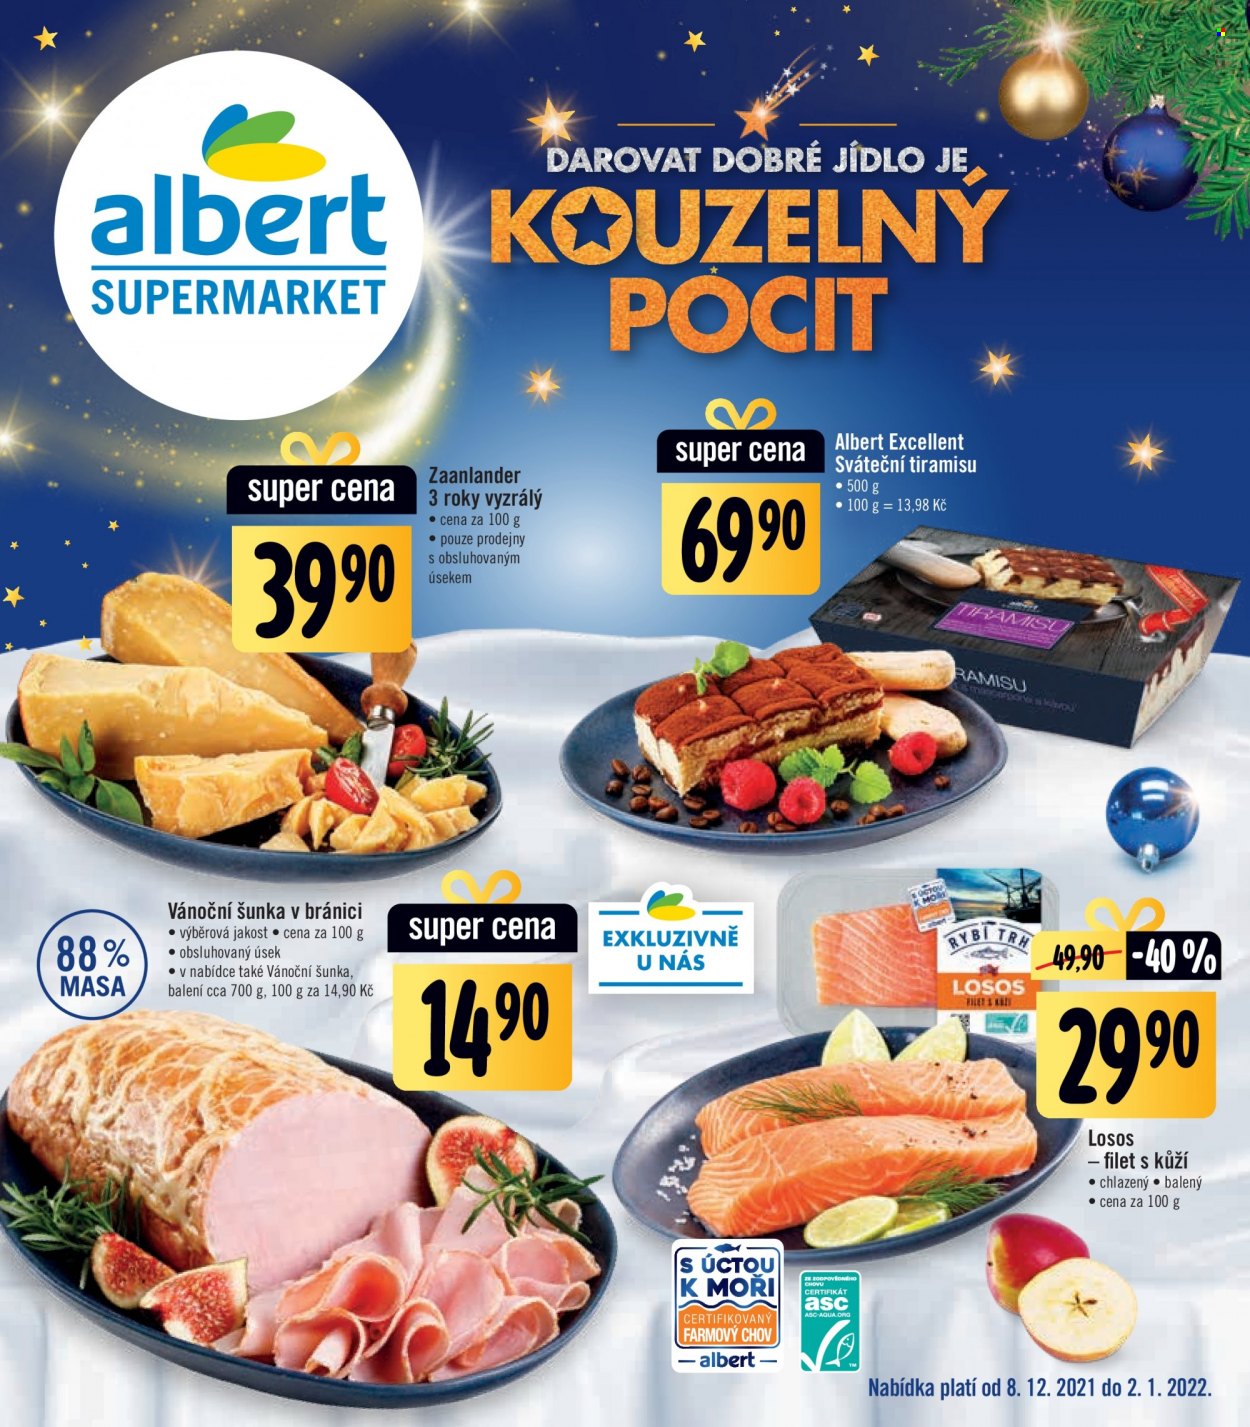 thumbnail - Leták Albert Supermarket - 8.12.2021 - 2.1.2022 - Produkty v akci - Albert Excellent, tiramisu, sýr, Zaanlander, šunka, vánoční šunka, losos, rybí filet. Strana 1.